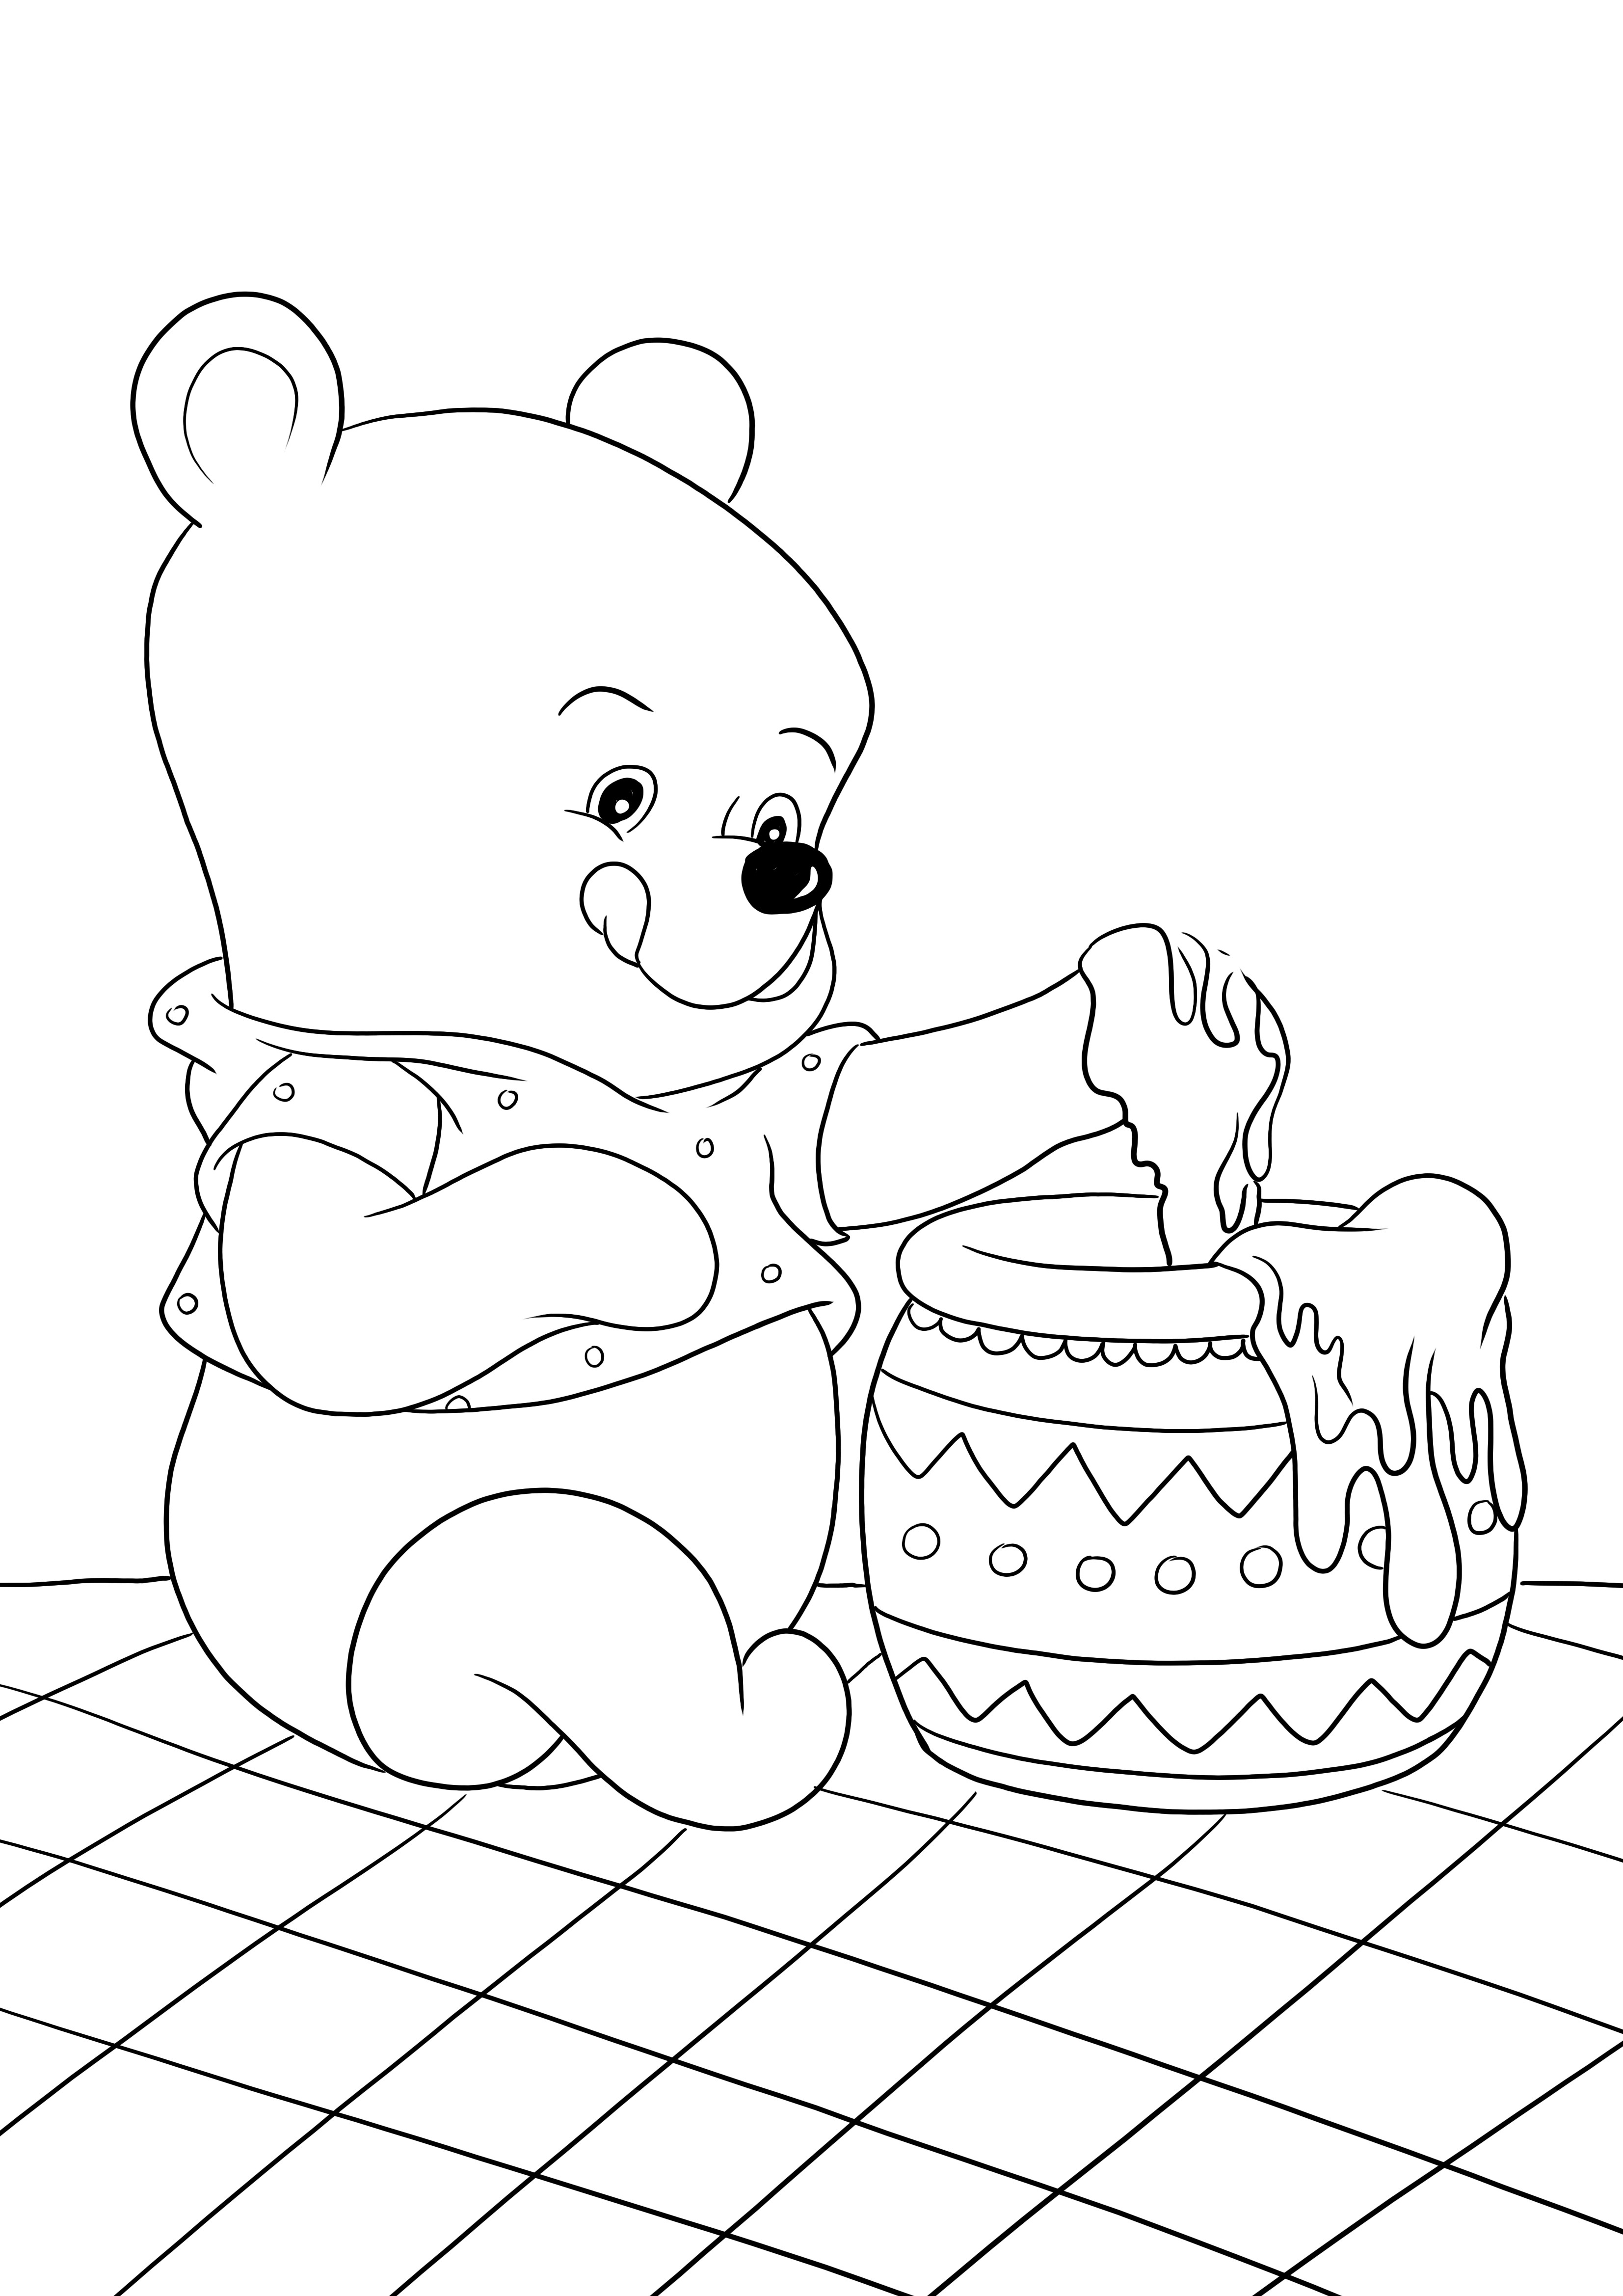 Winnie isst Honig aus einem Glas, um ein Bild auszumalen und auszudrucken oder für später aufzubewahren